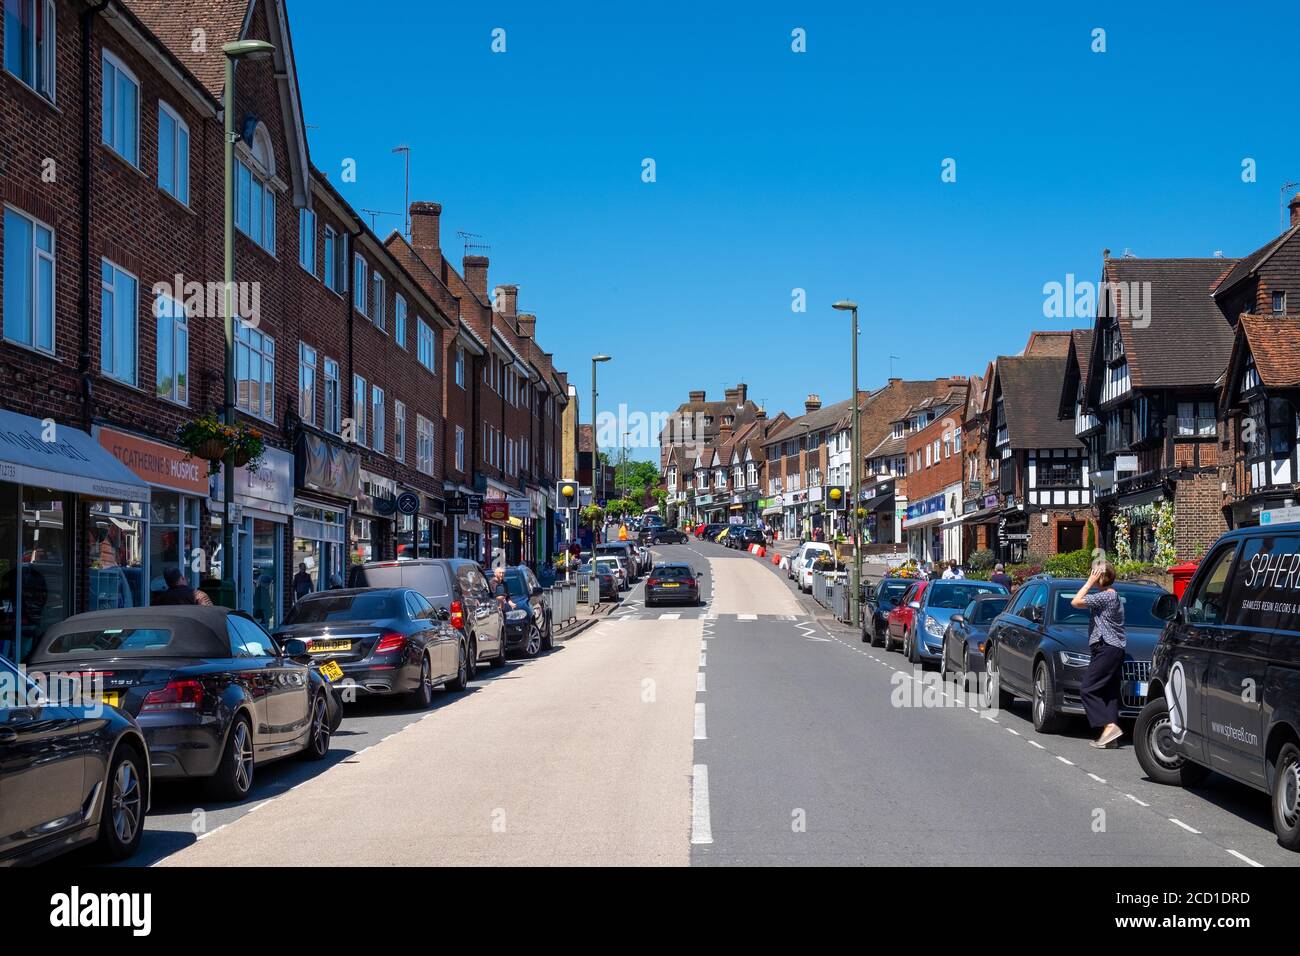 High Street avec boutiques et voitures garées, Oxted, Surrey, Angleterre, GB Banque D'Images